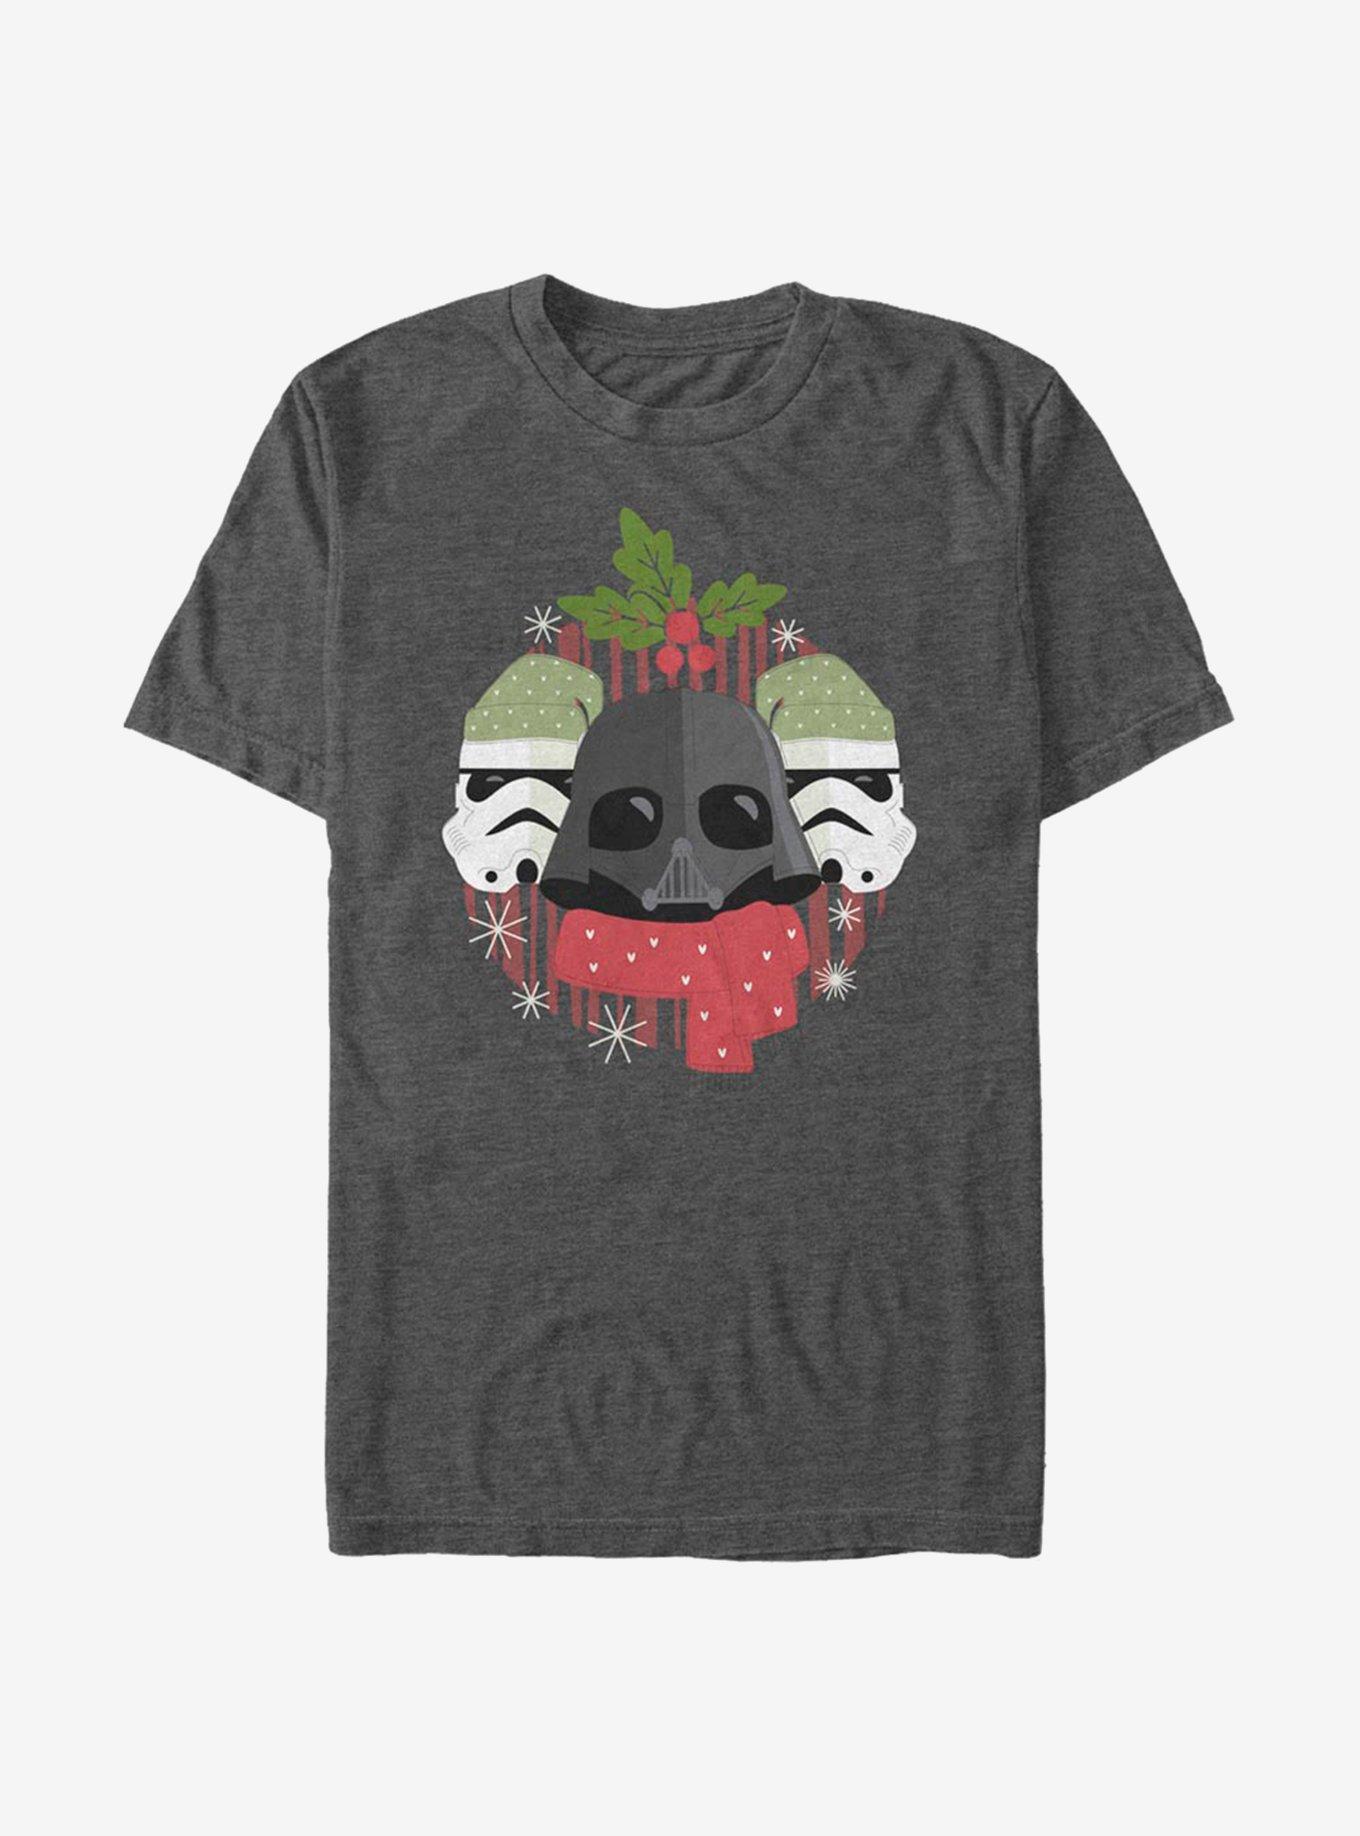 Star Wars Darth Holiday T-Shirt, CHAR HTR, hi-res